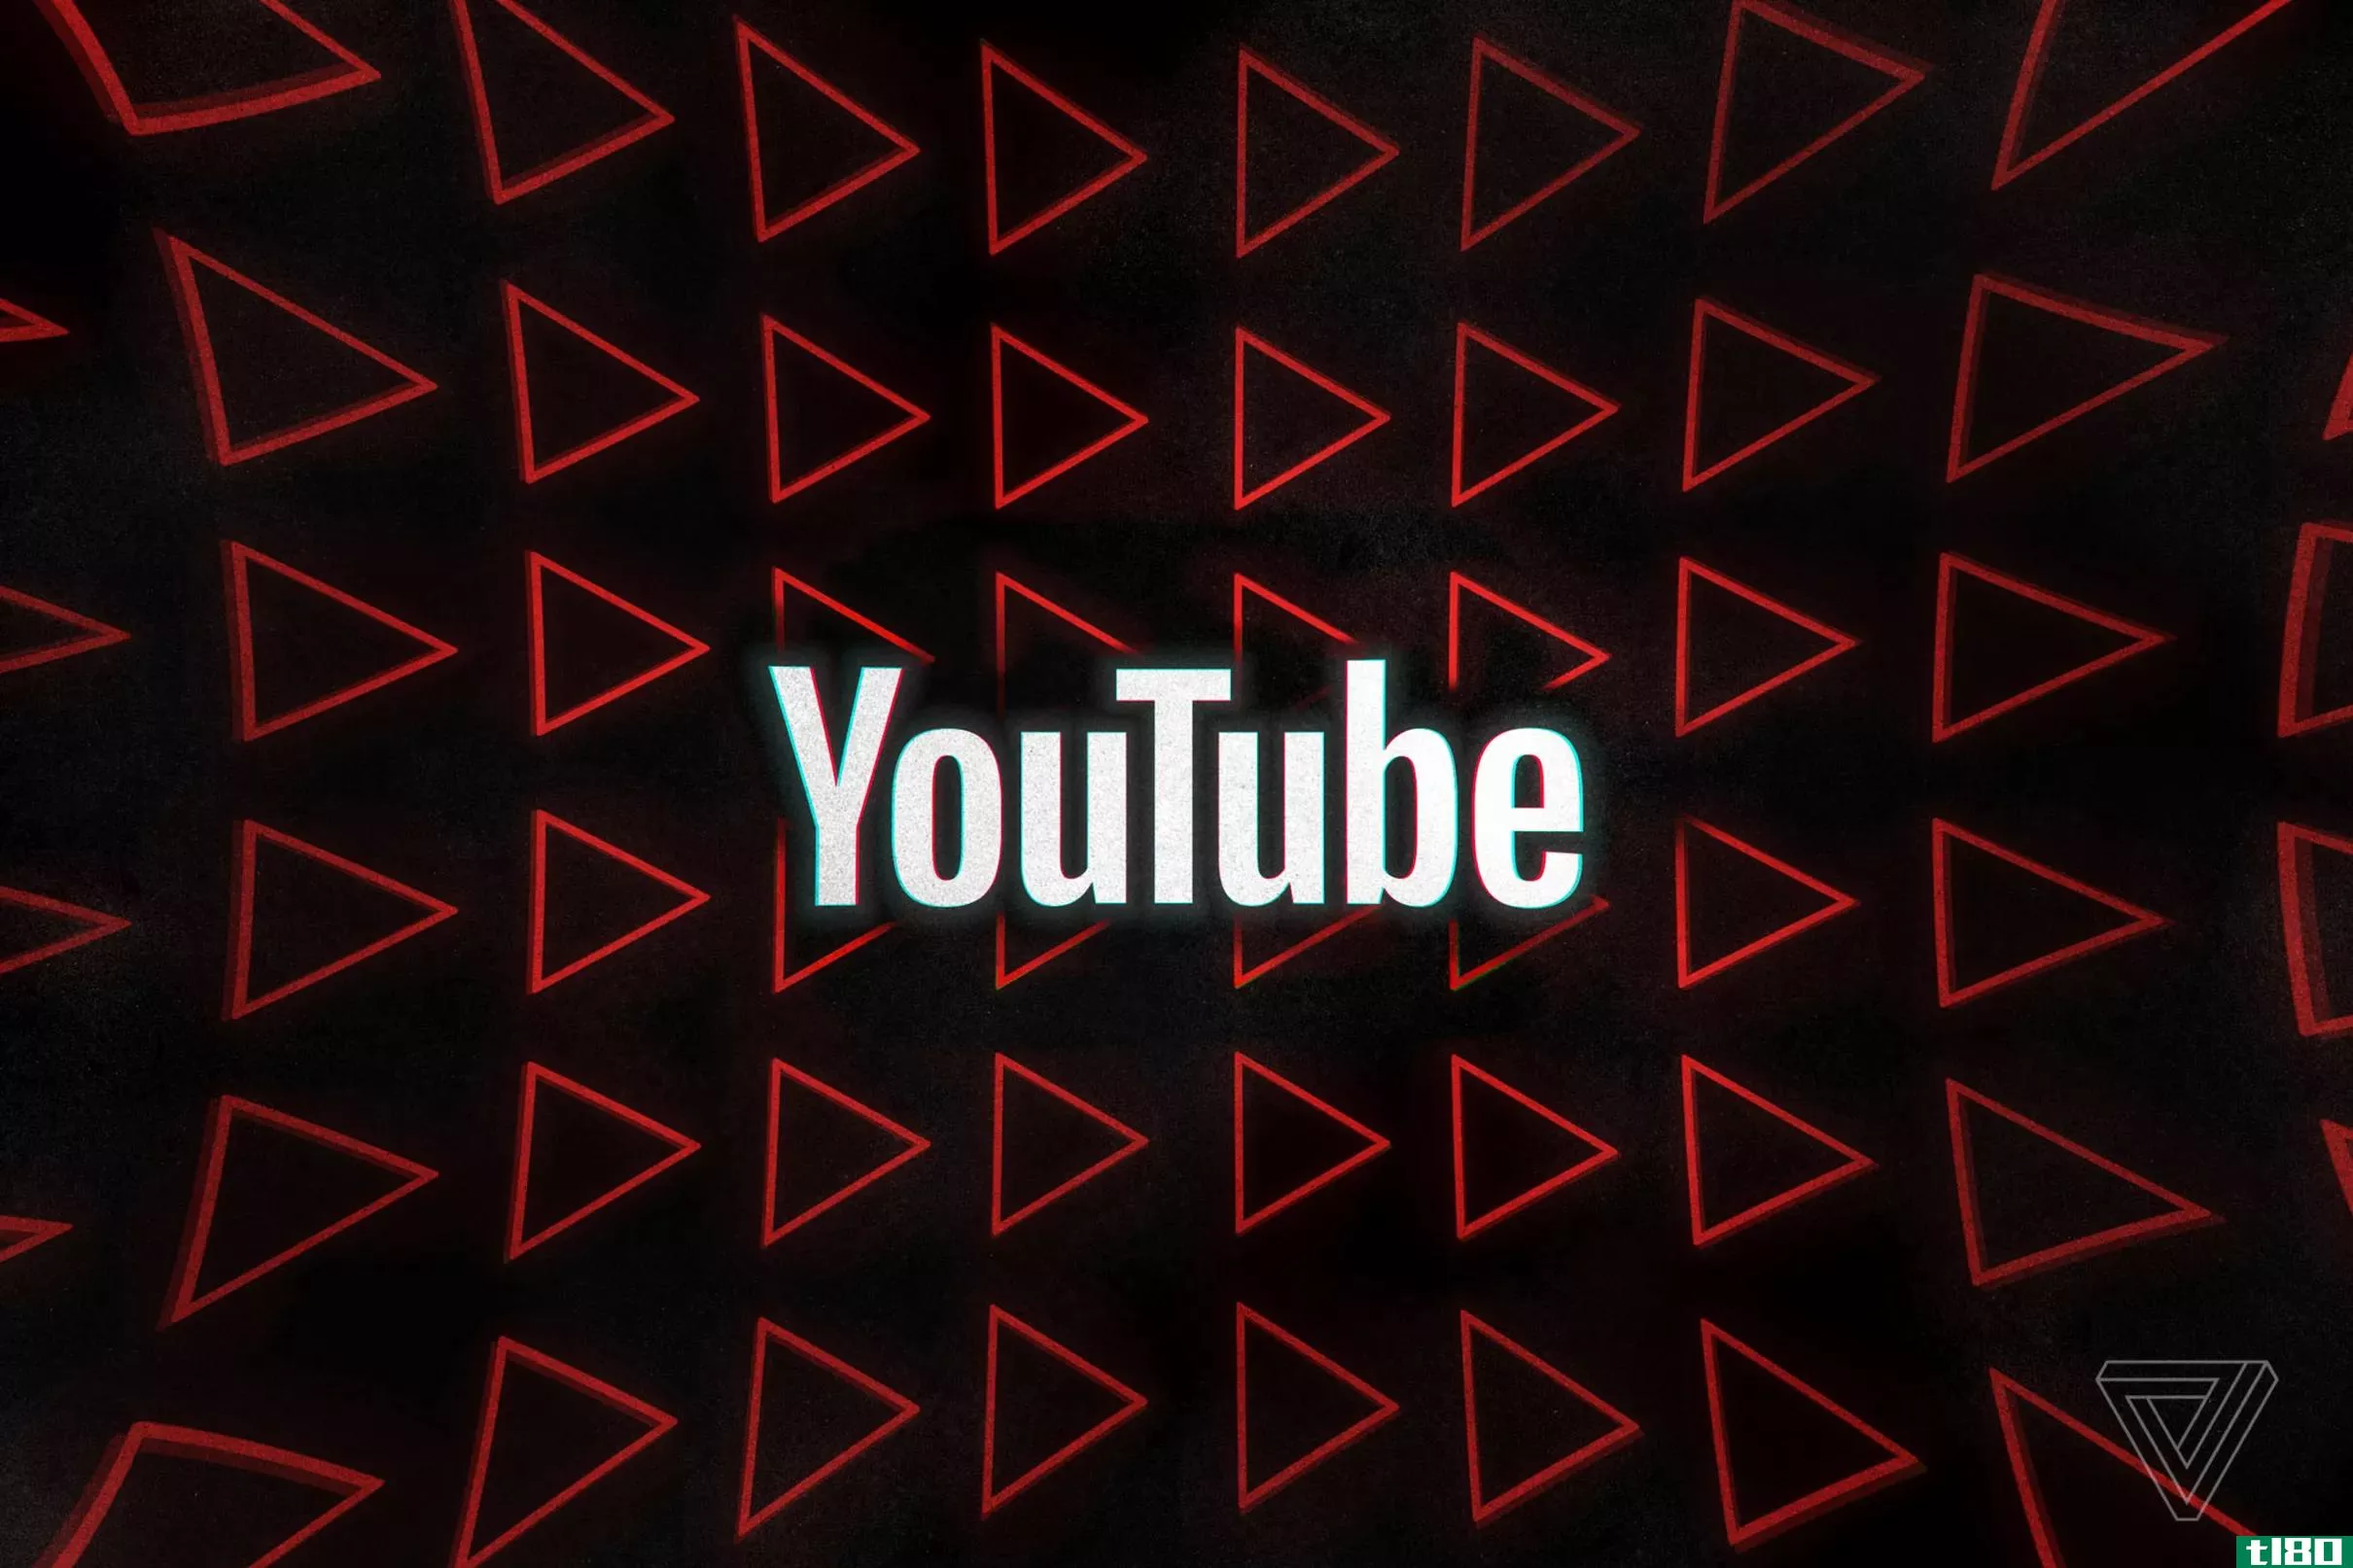 youtube音乐现在允许免费用户向扬声器播放上传的音乐